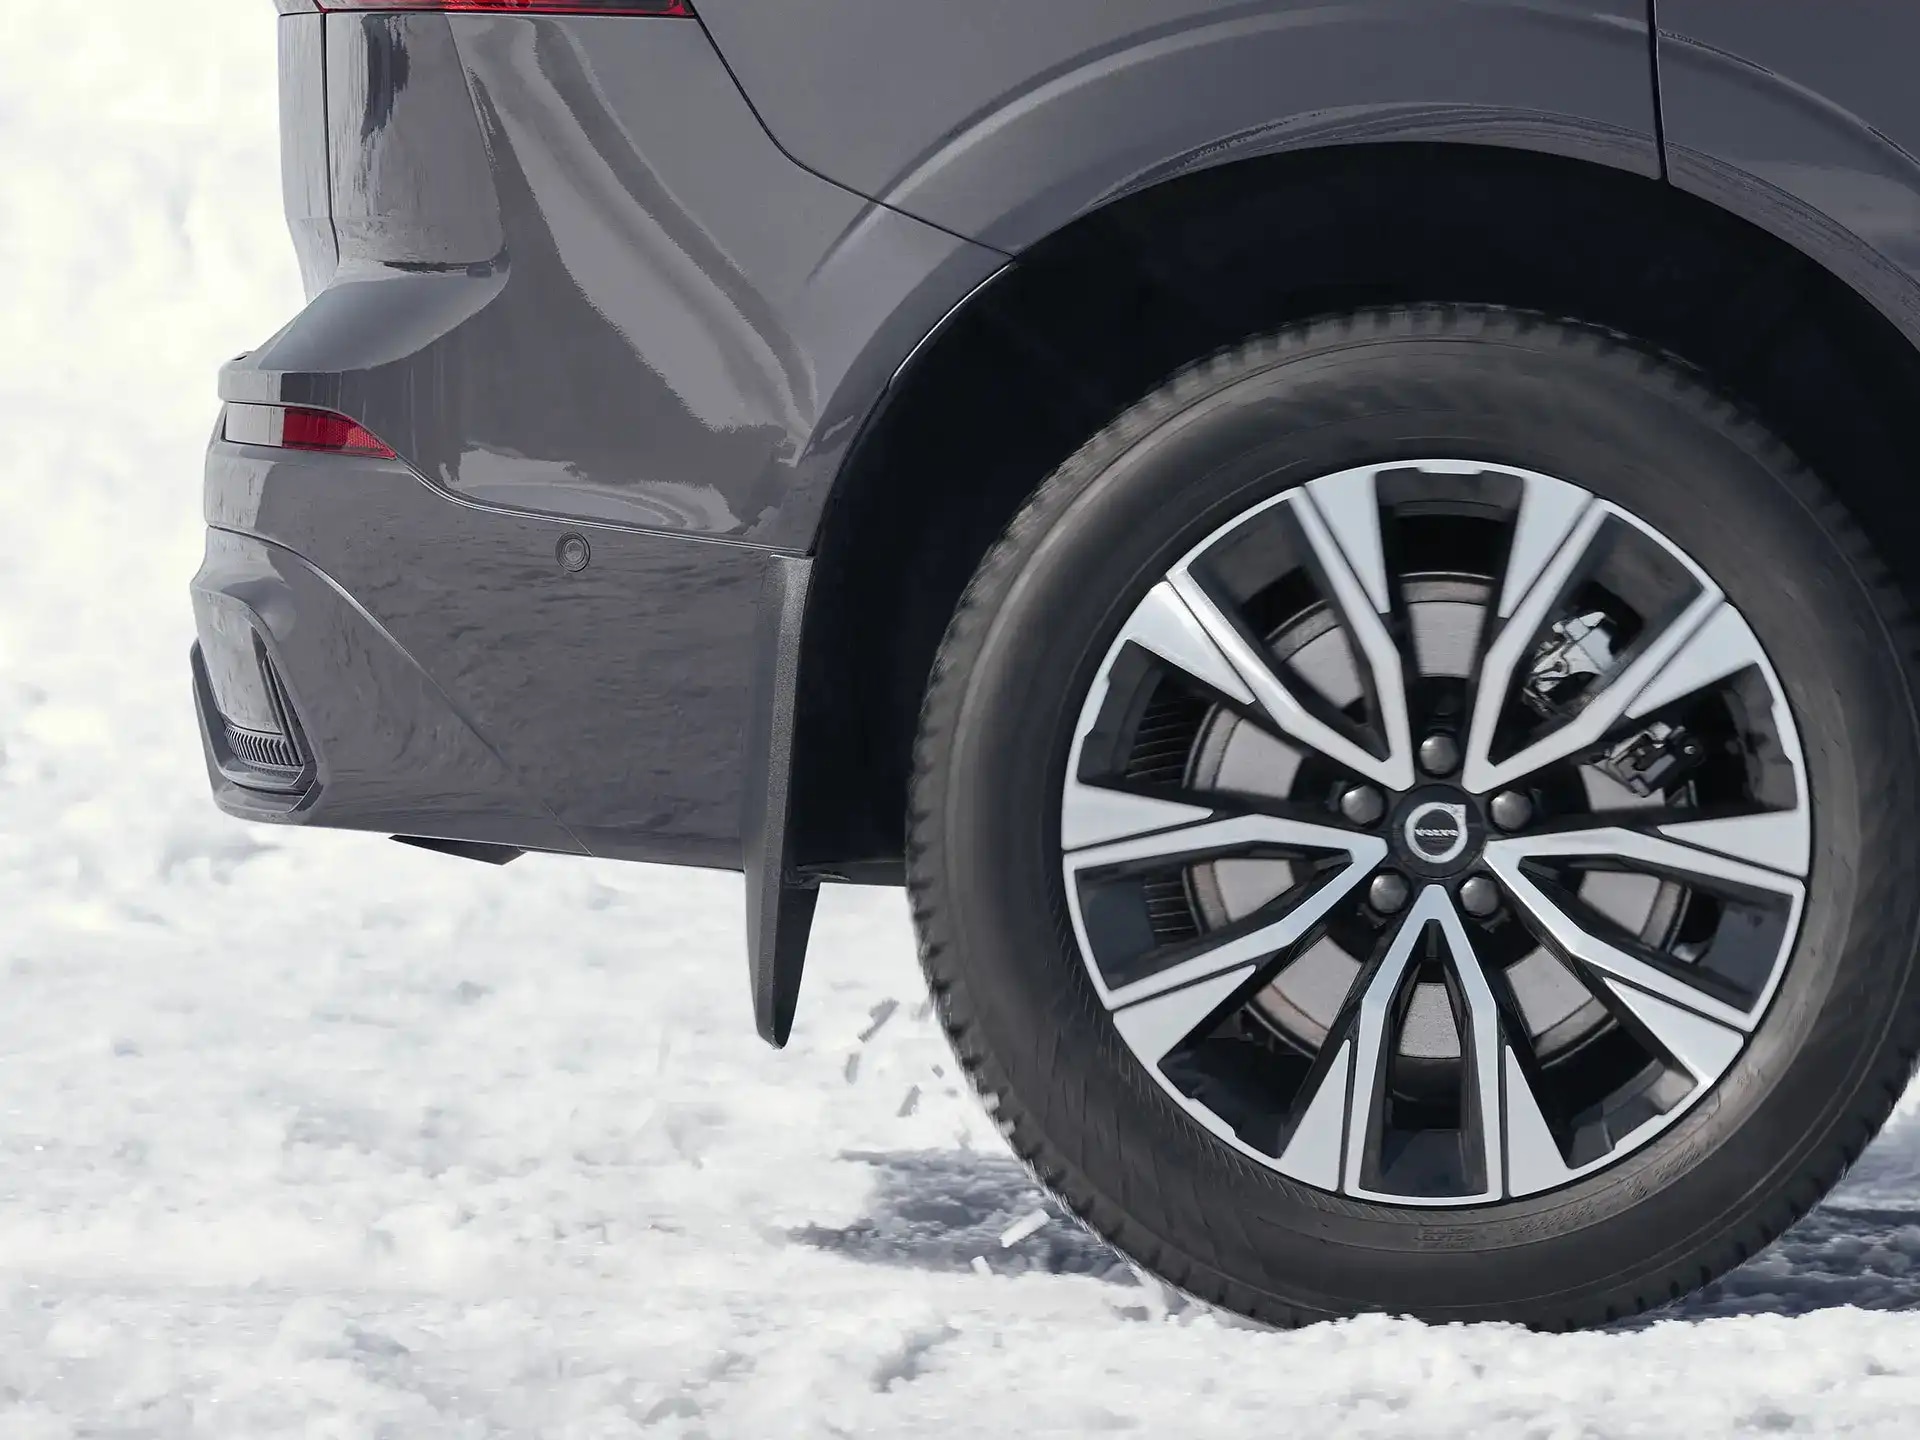 Seitenansicht eines Volvo Fahrzeugs auf einer verschneiten Straße mit montiertem Volvo Schmutzfänger.